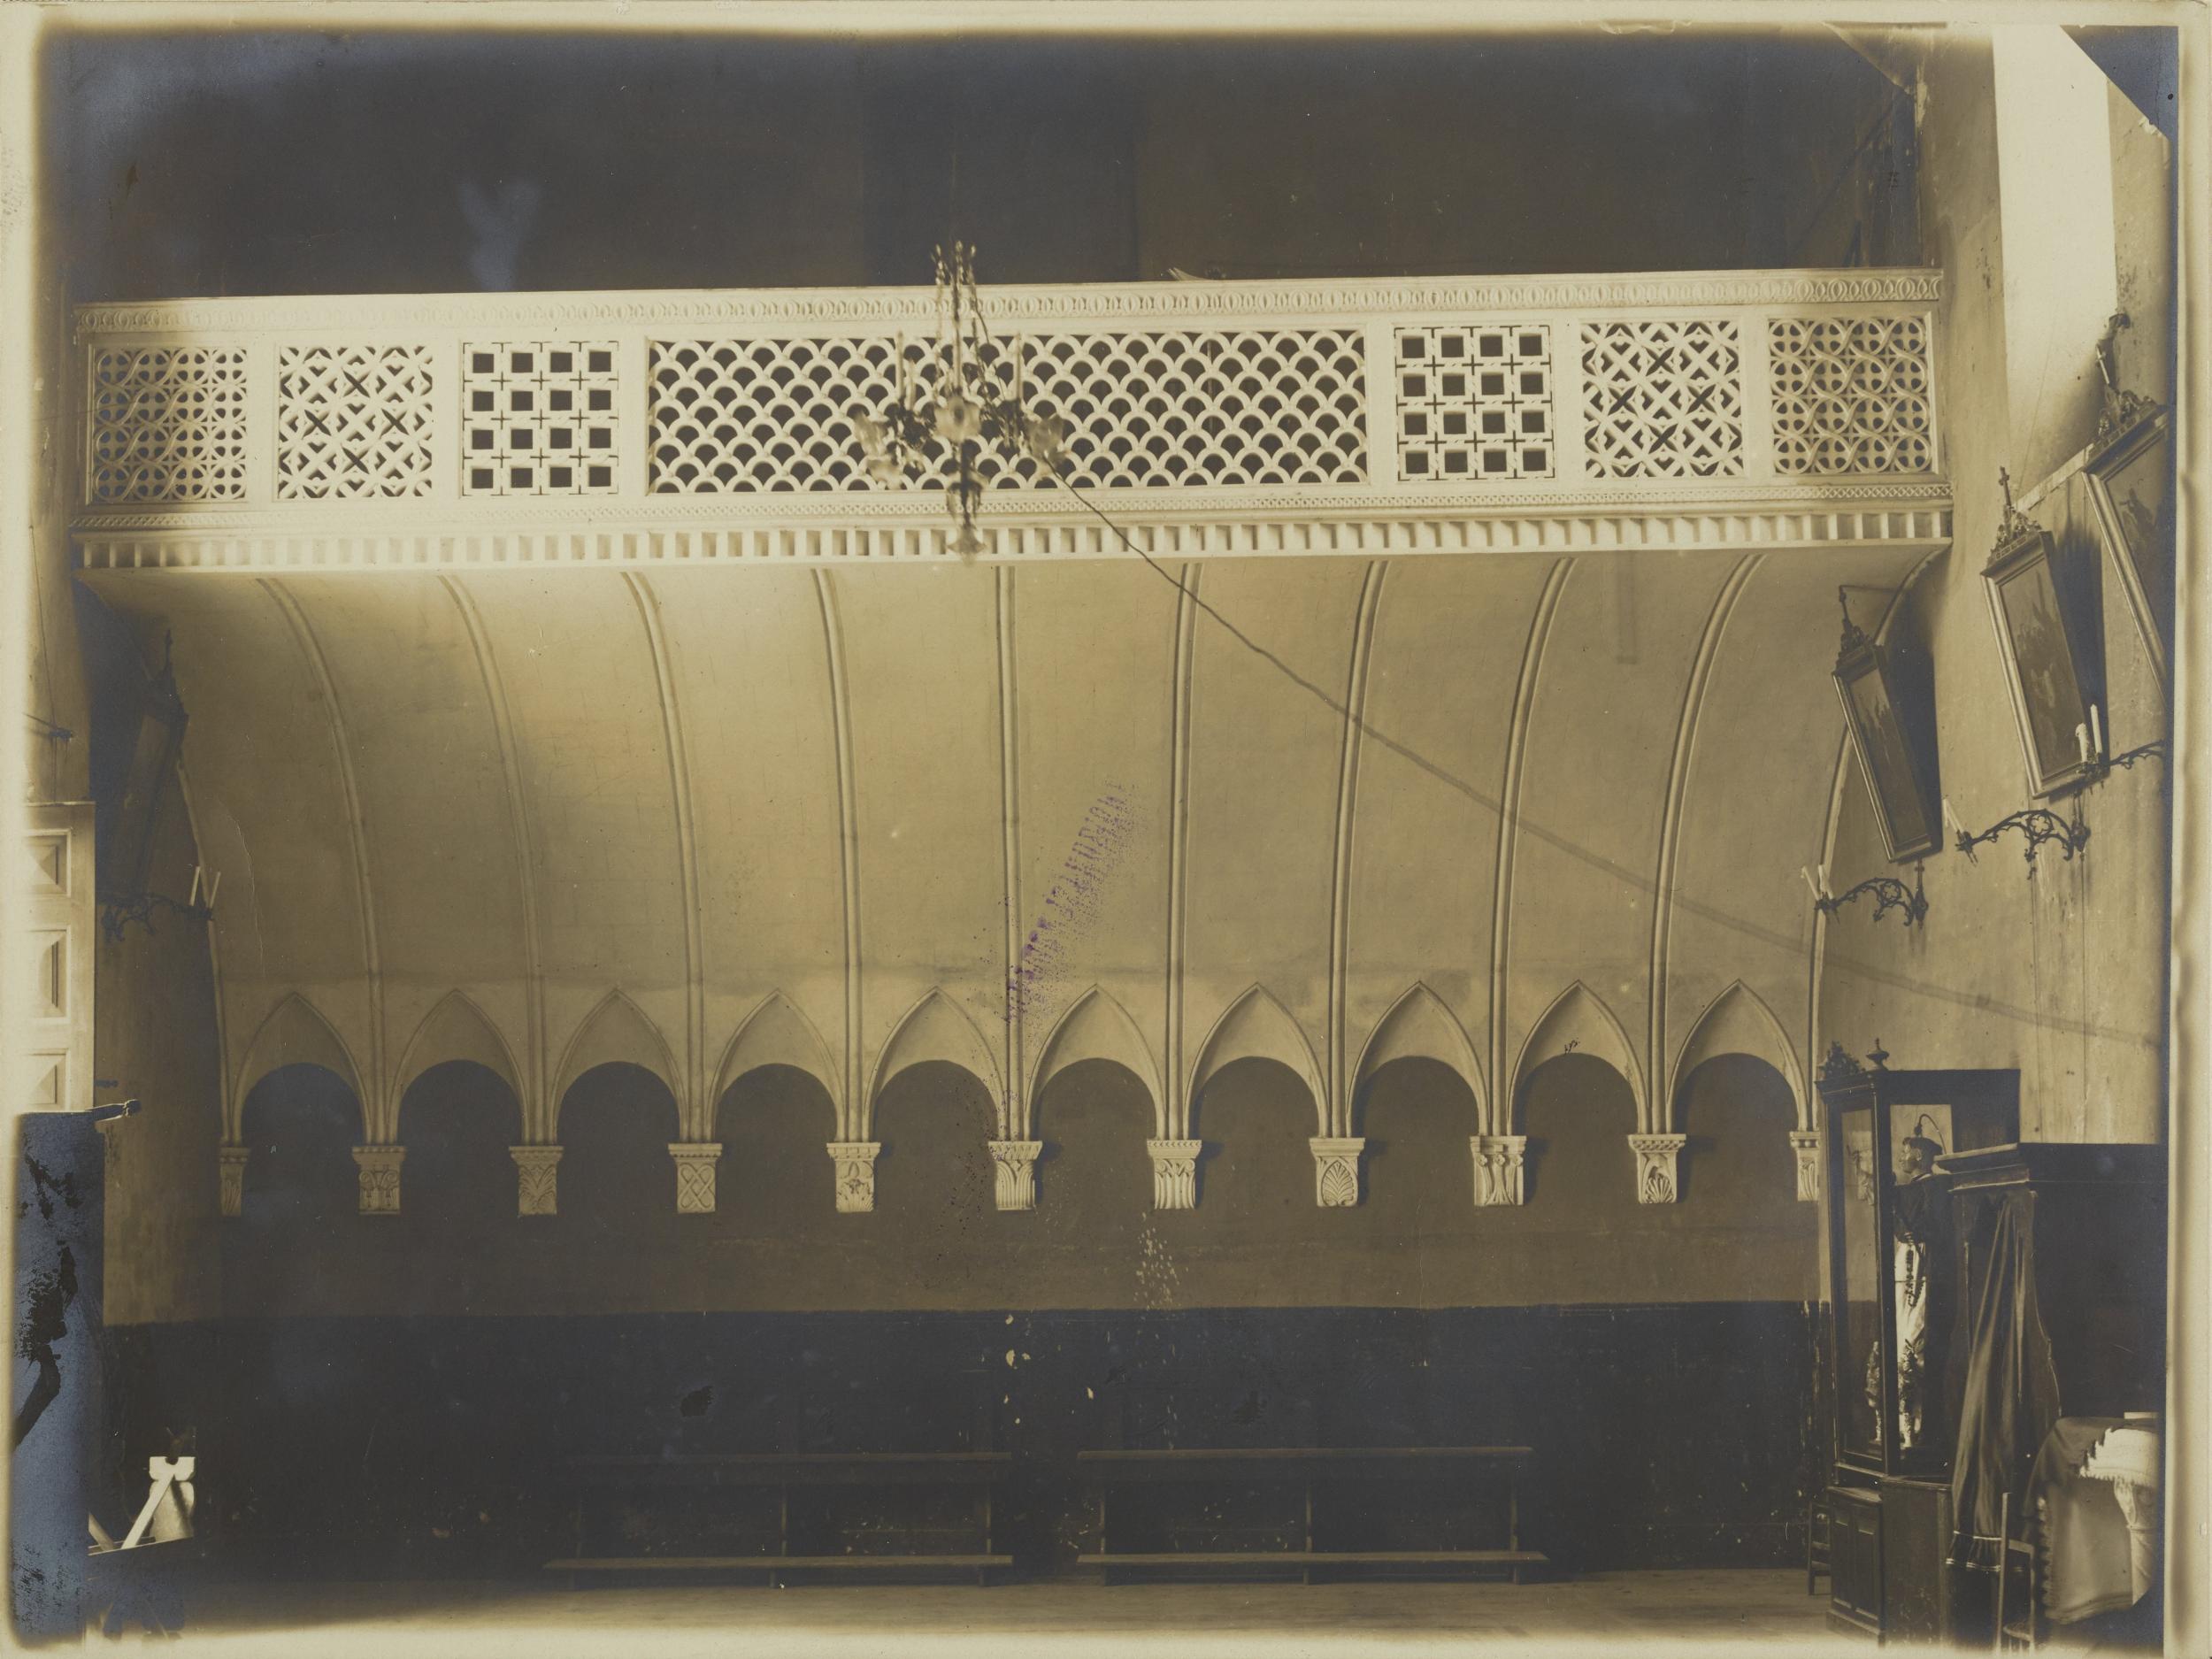 Fotografo non identificato, Bitonto - Chiesa di S. Leo, cantoria, 1891-1900, gelatina ai sali d'argento/carta, MPI137907